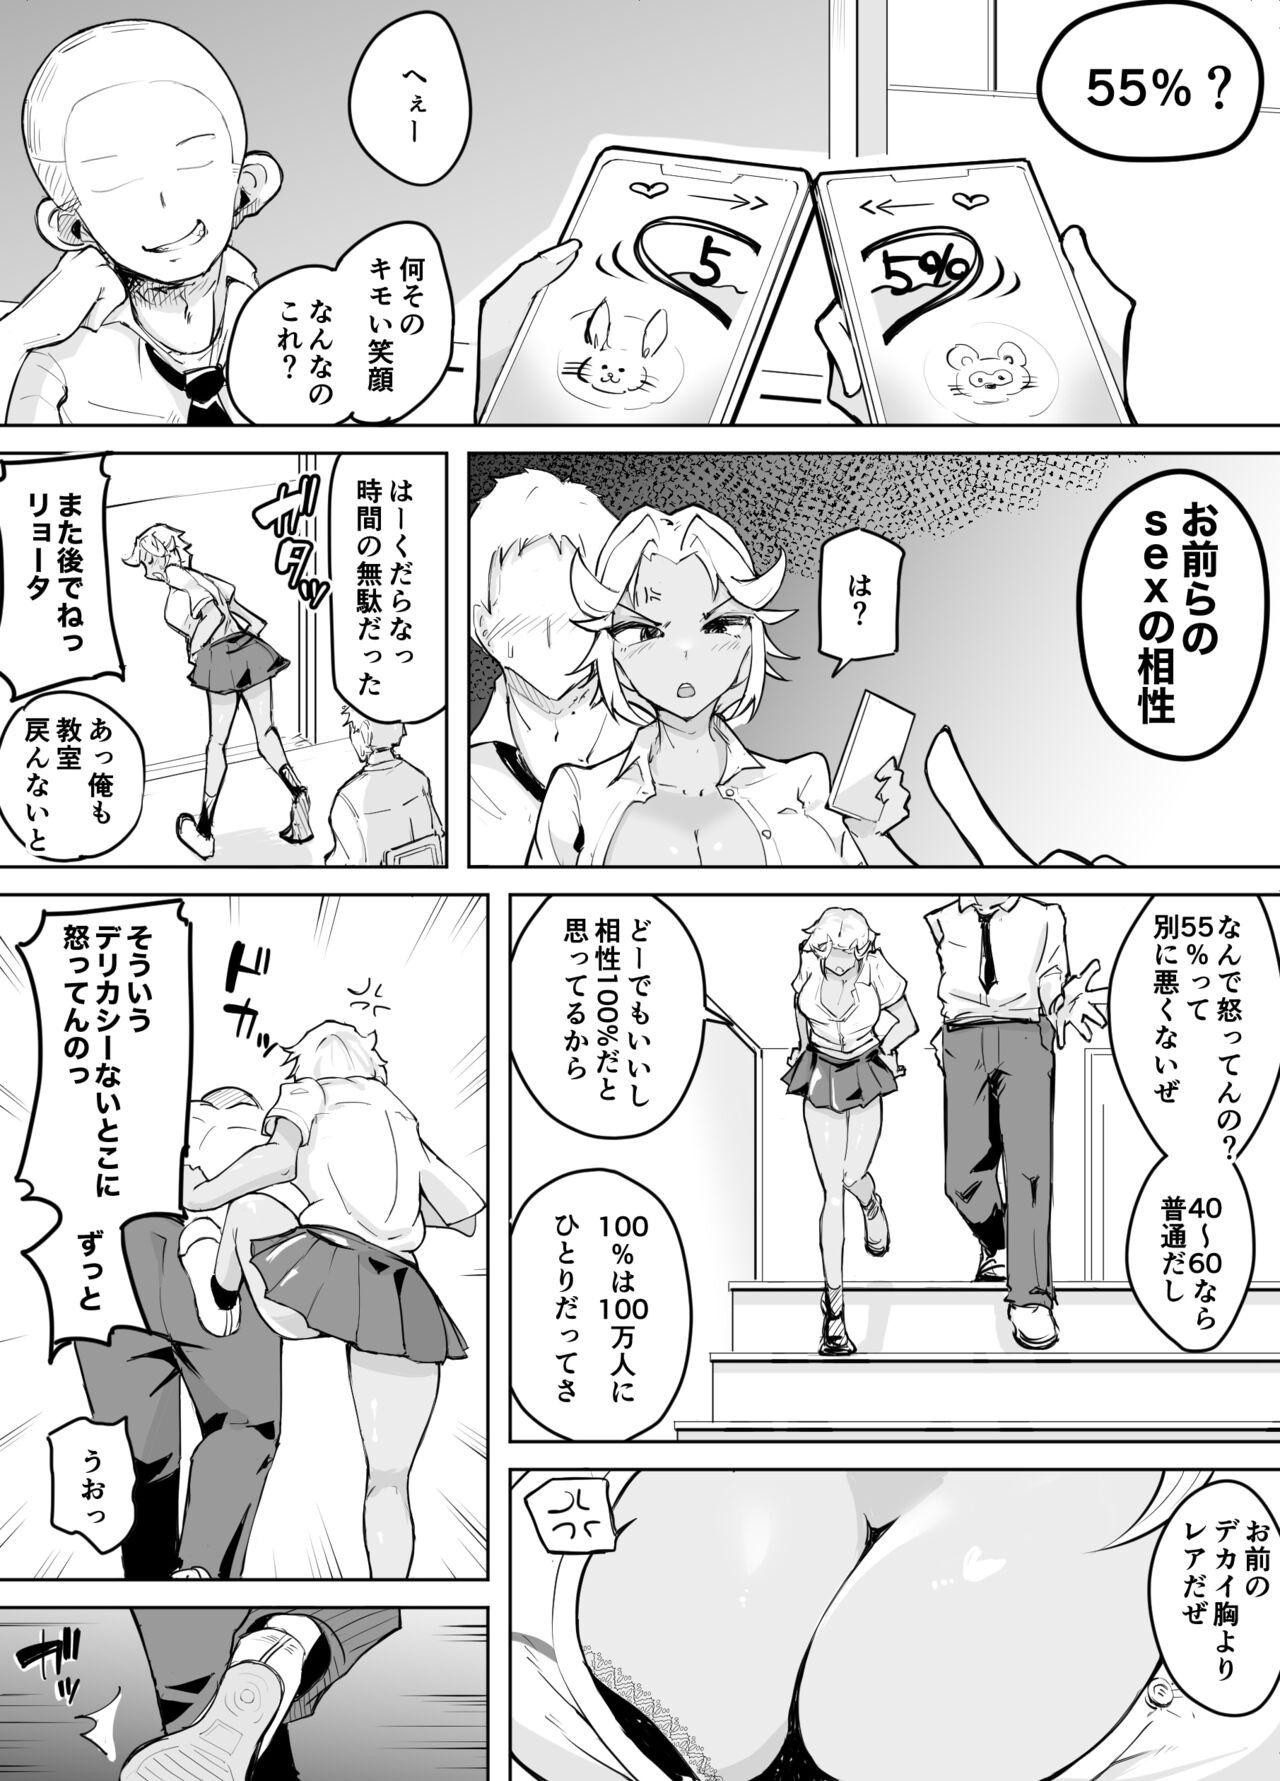 Urine Kare yori Ii Hito ga Aishou Appli de Mitsukatte... - Original Negro - Page 6